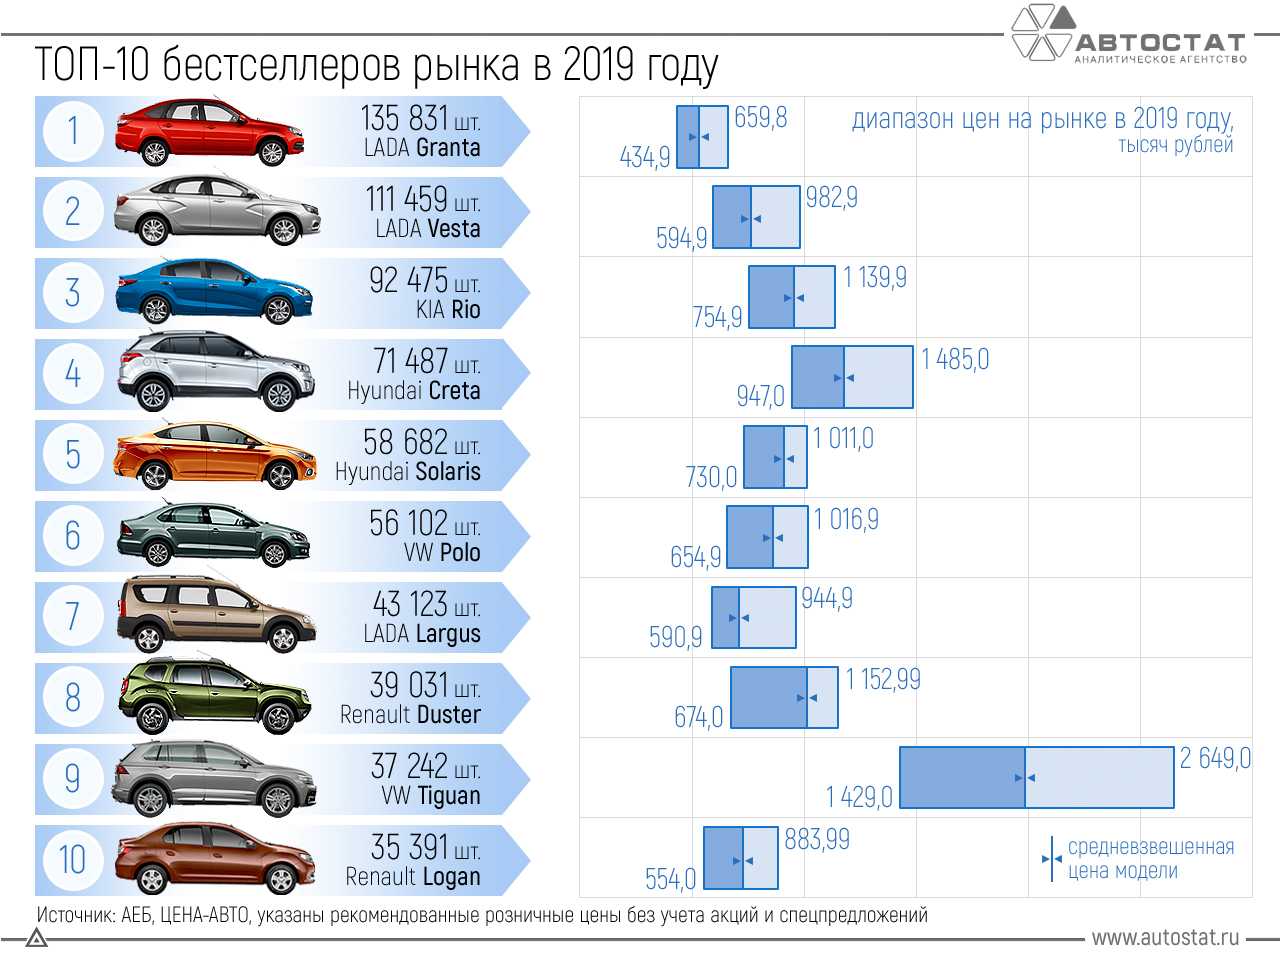 Узнайте, какие автомобили являются самыми продаваемыми в 2022 году Какие марки автомобилей являются самыми популярными сегодня по версии АЕБ и почему